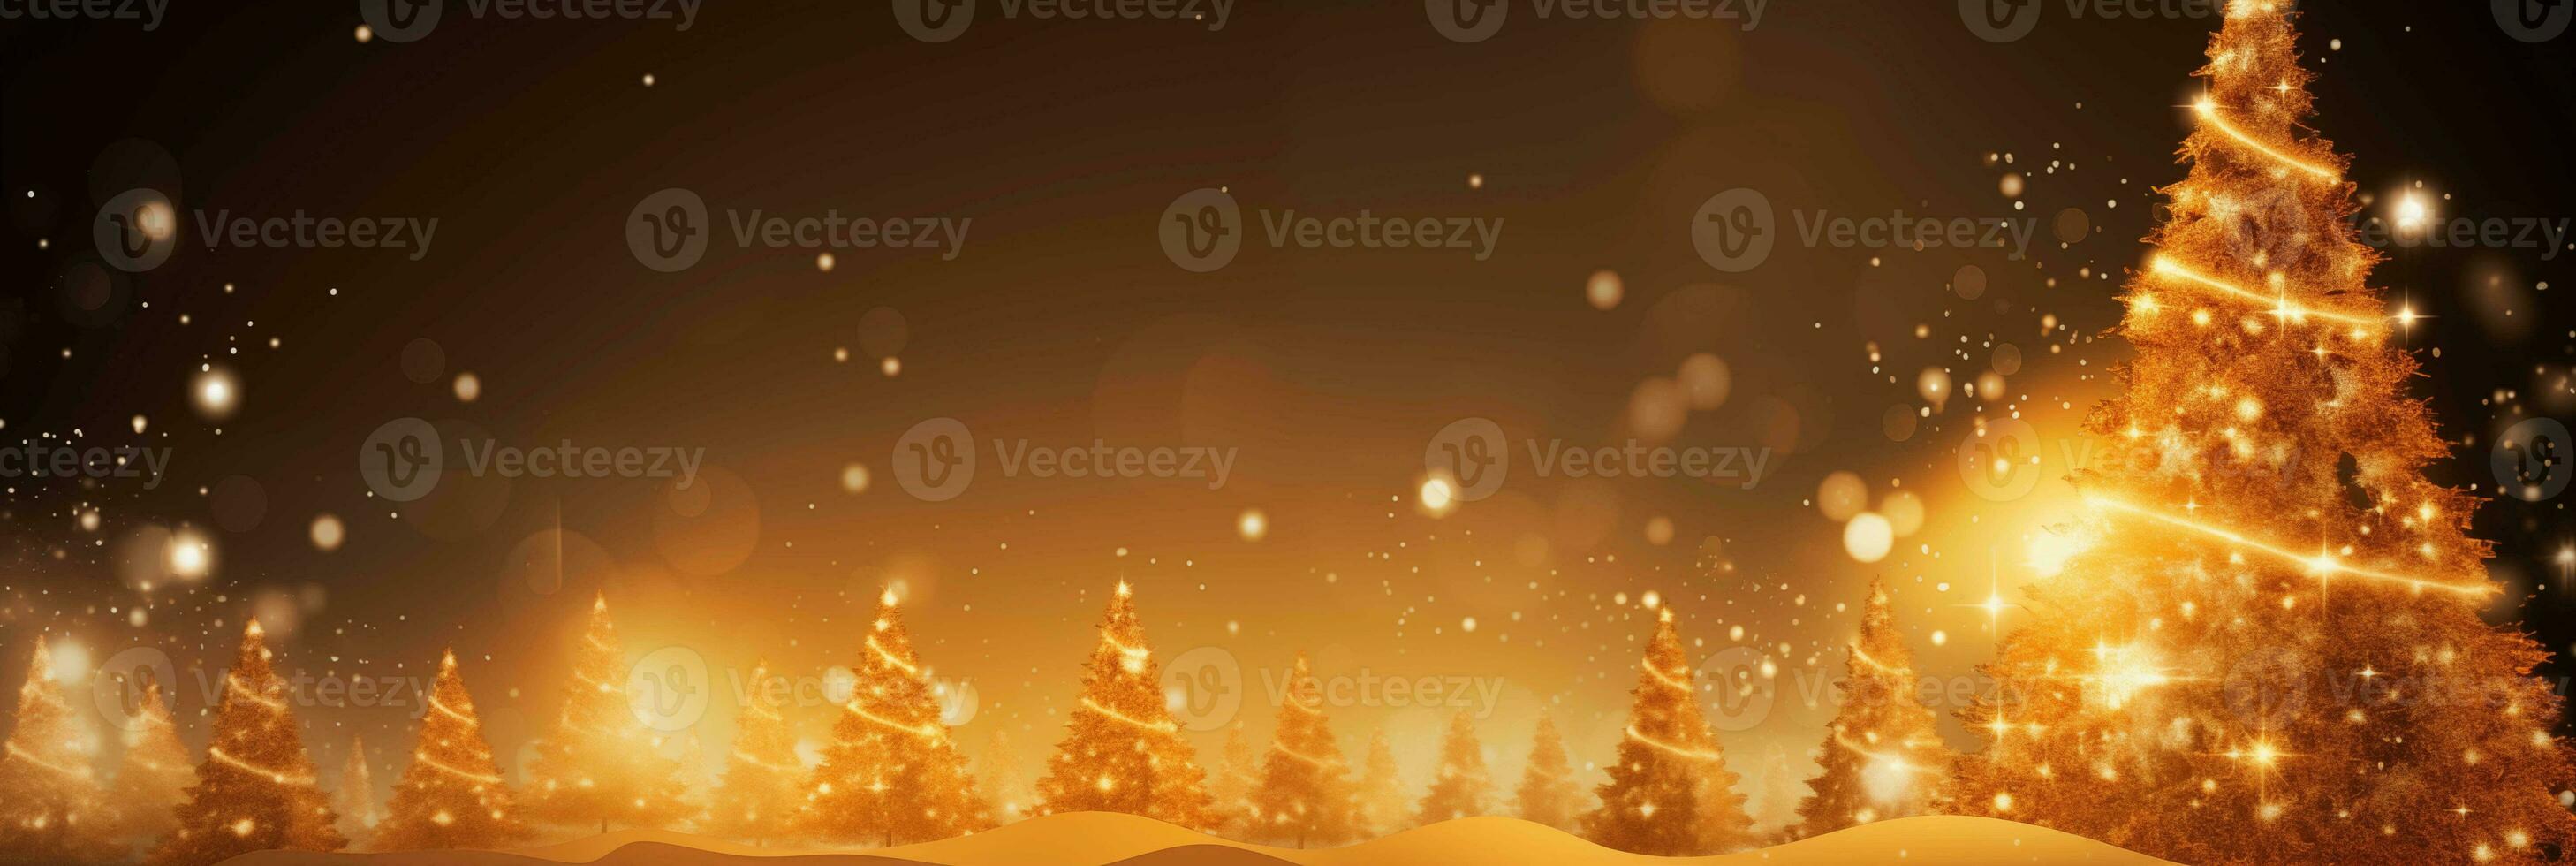 festivo Natal inverno horizontal bandeira, fundo para projeto, respingo tela, cabeçalho foto